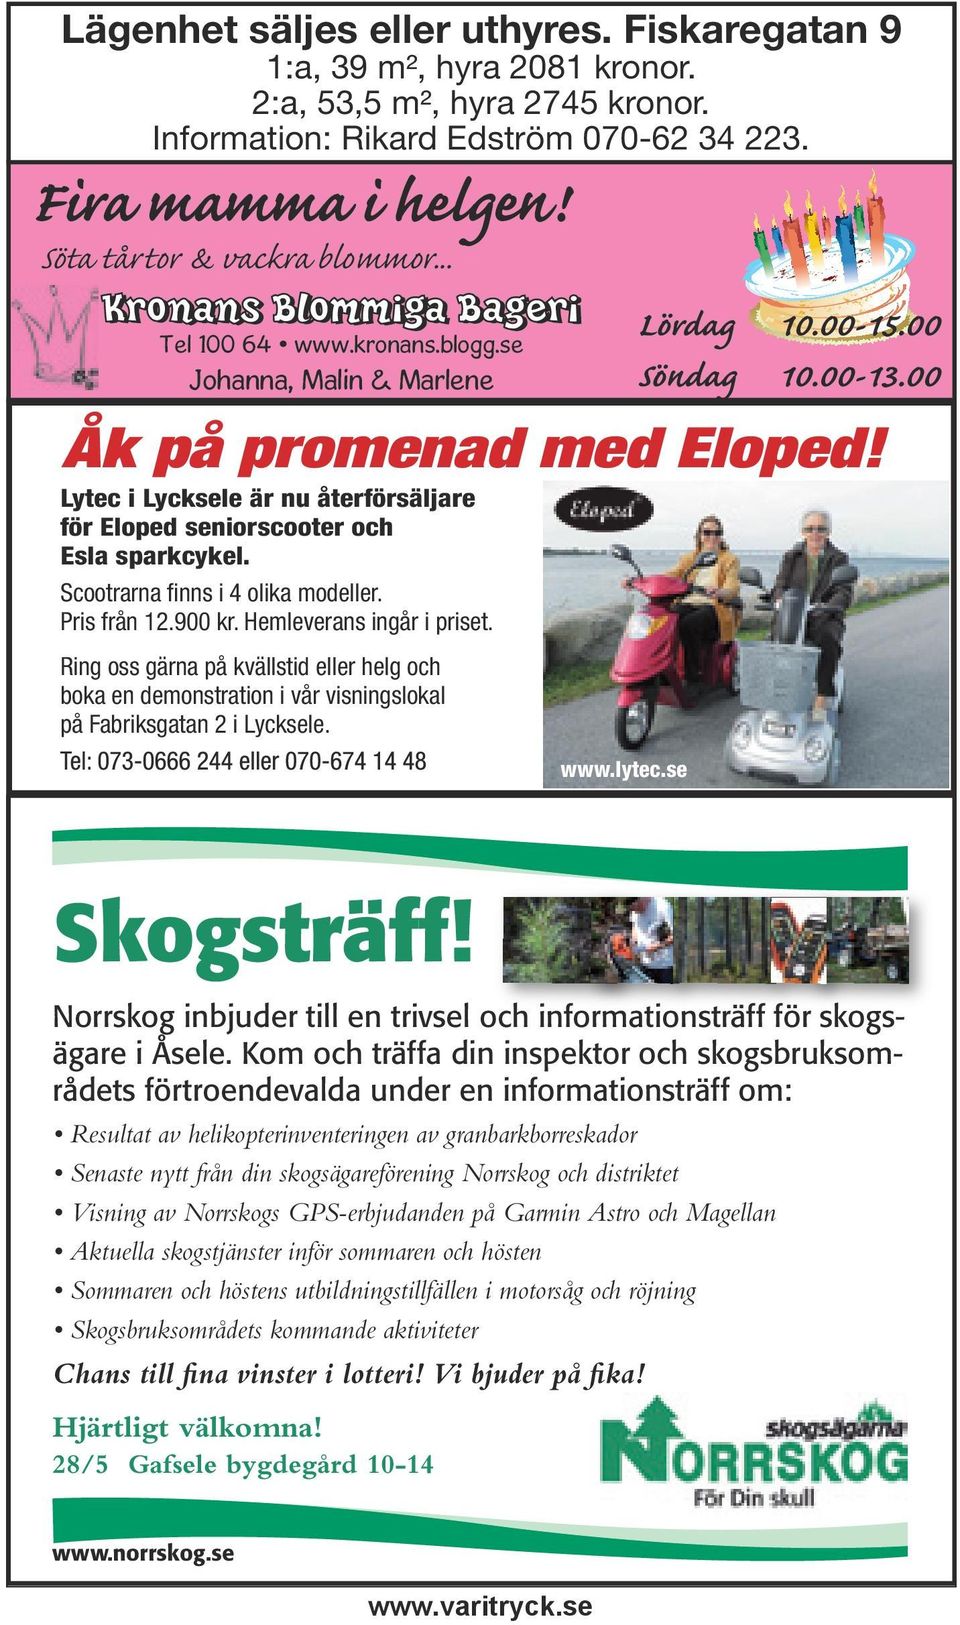 Lytec i Lycksele är nu återförsäljare för Eloped seniorscooter och Esla sparkcykel. Scootrarna fi nns i 4 olika modeller. Pris från 12.900 kr. Hemleverans ingår i priset.